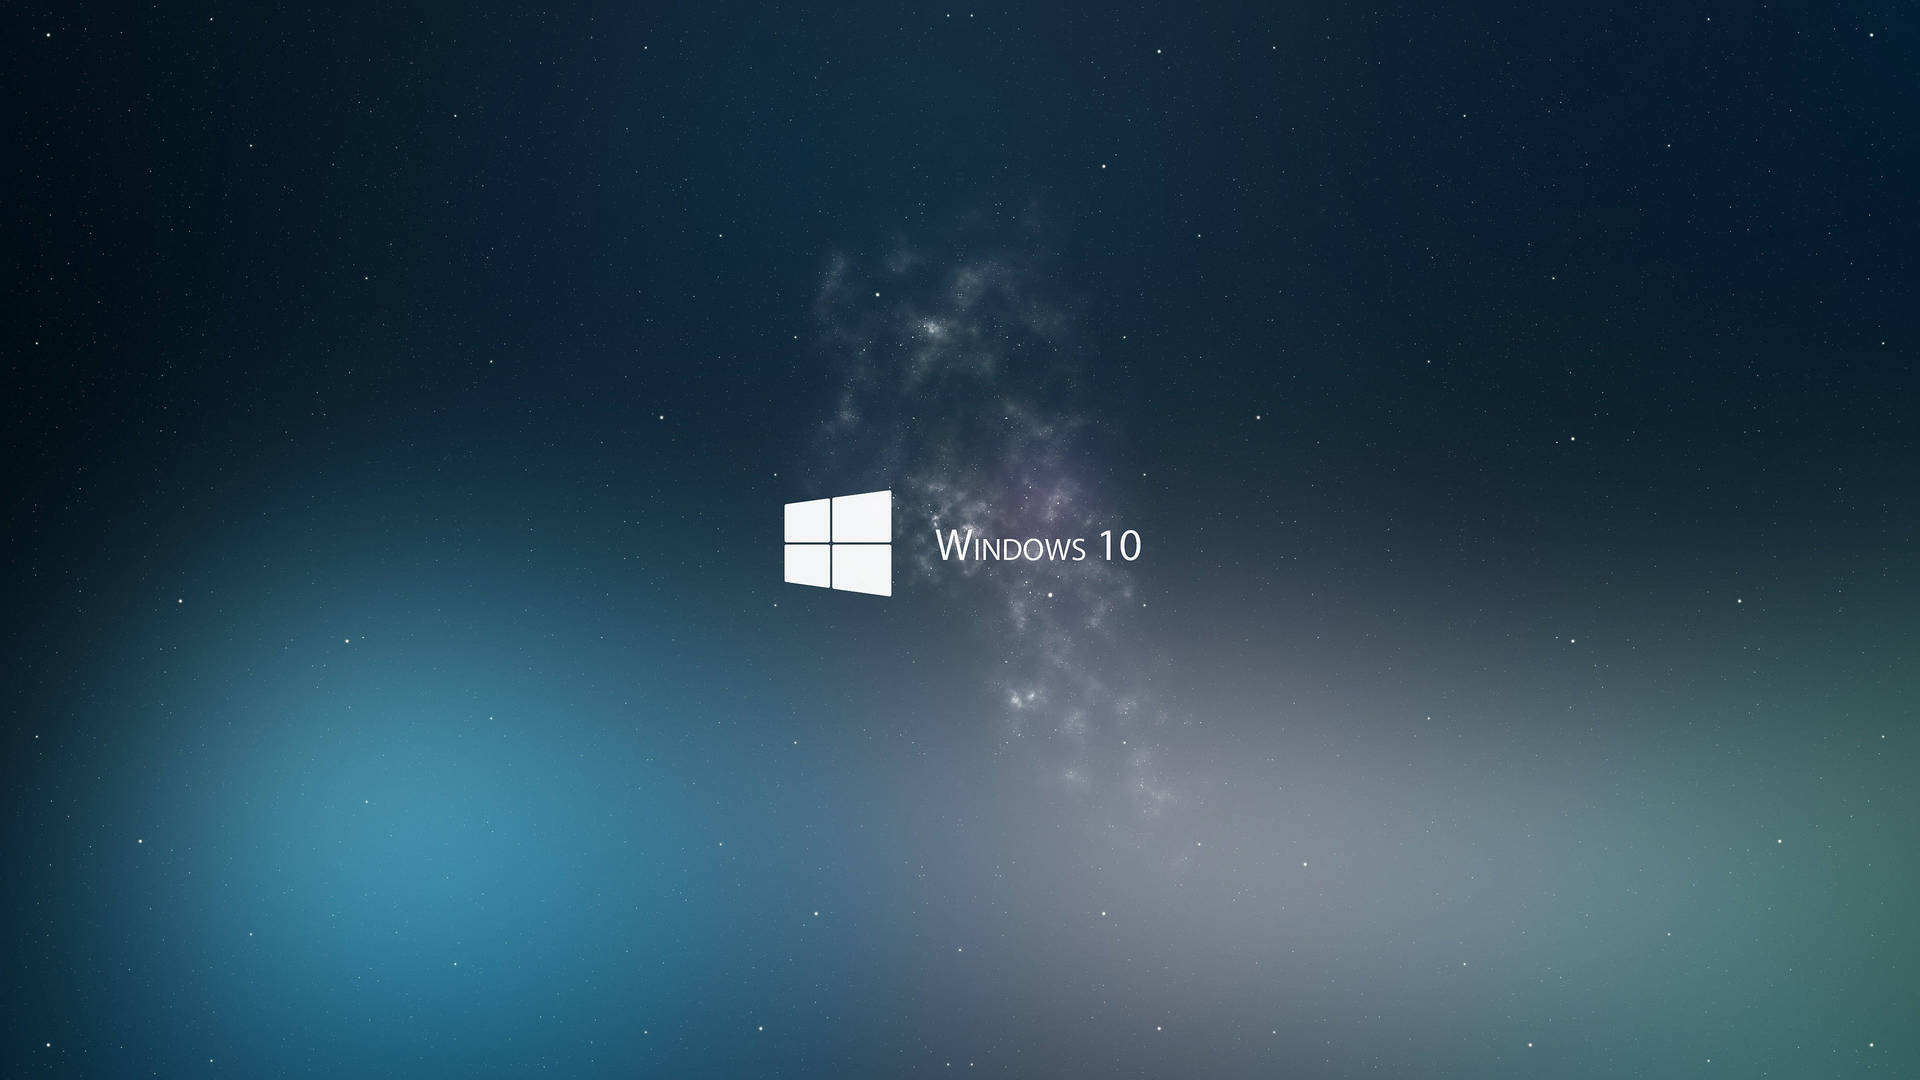 Fundode Tela Estrelado Escuro Do Windows 10. Papel de Parede